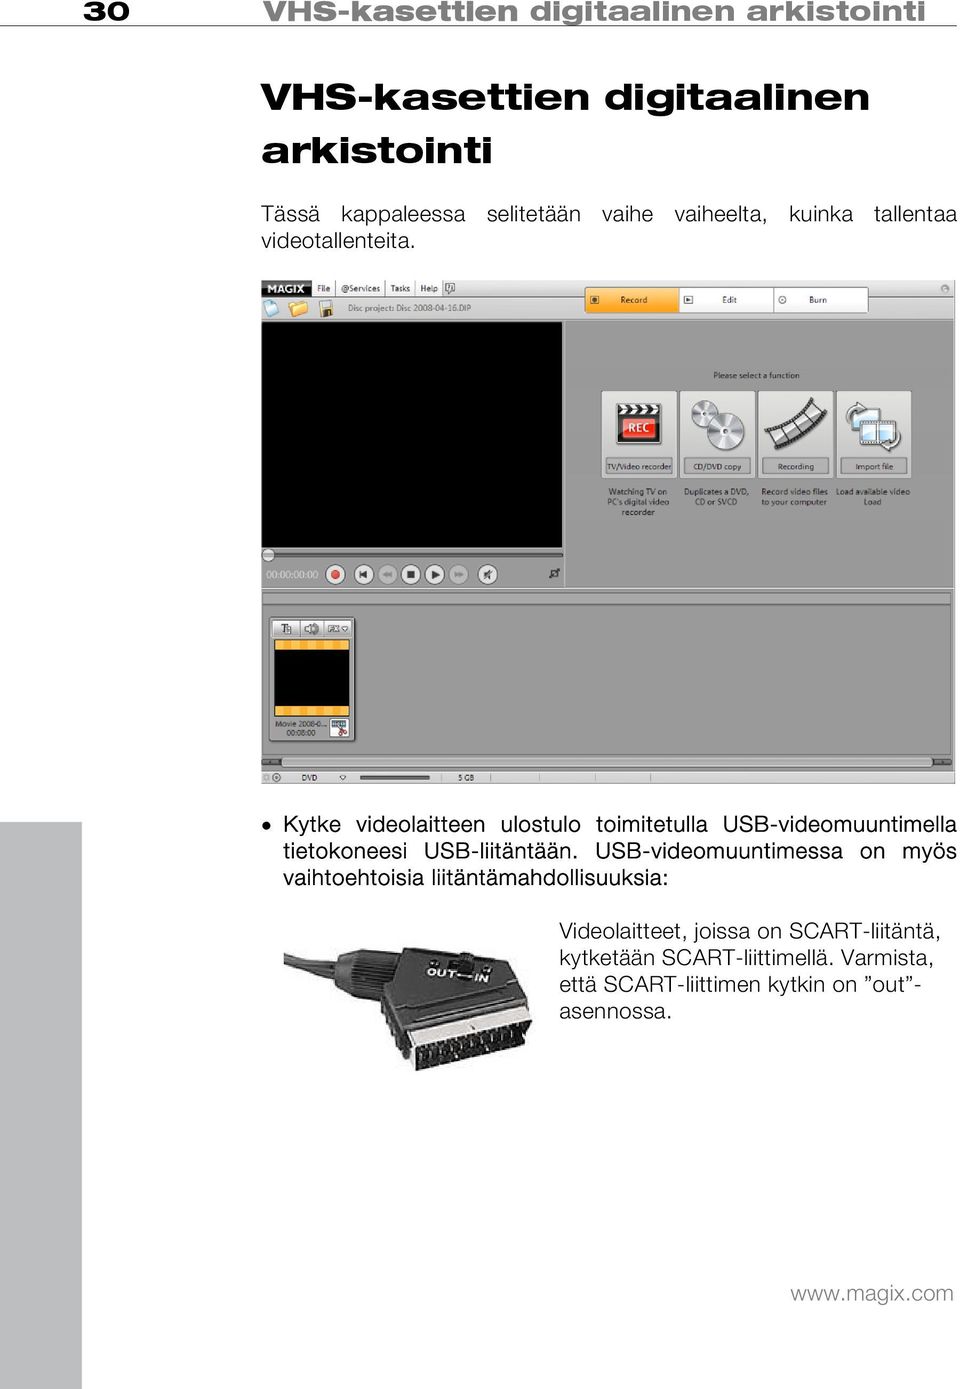 Kytke videolaitteen ulostulo toimitetulla USB-videomuuntimella tietokoneesi USB-liitäntään.